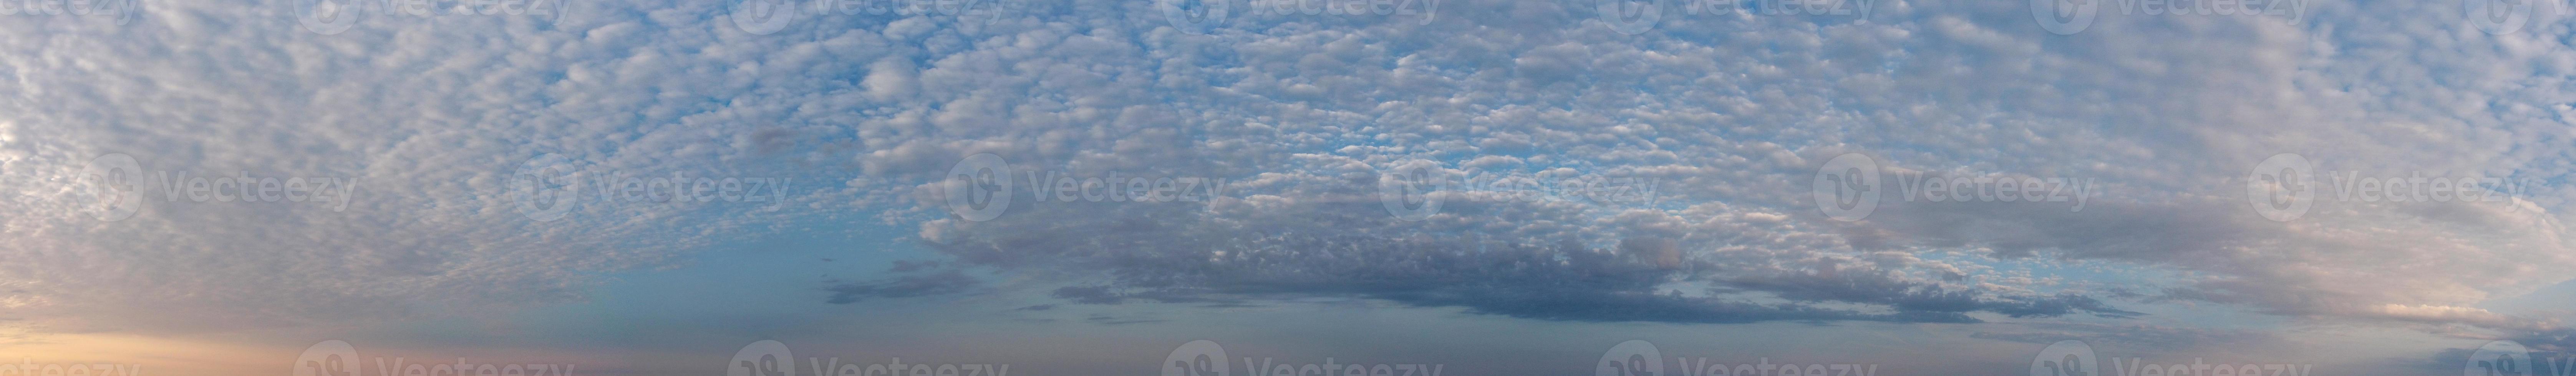 der schöne sonnenaufgang und die bunten wolken, die luftaufnahme und die hochwinkelansicht, die von der drohne in england uk aufgenommen wurden foto